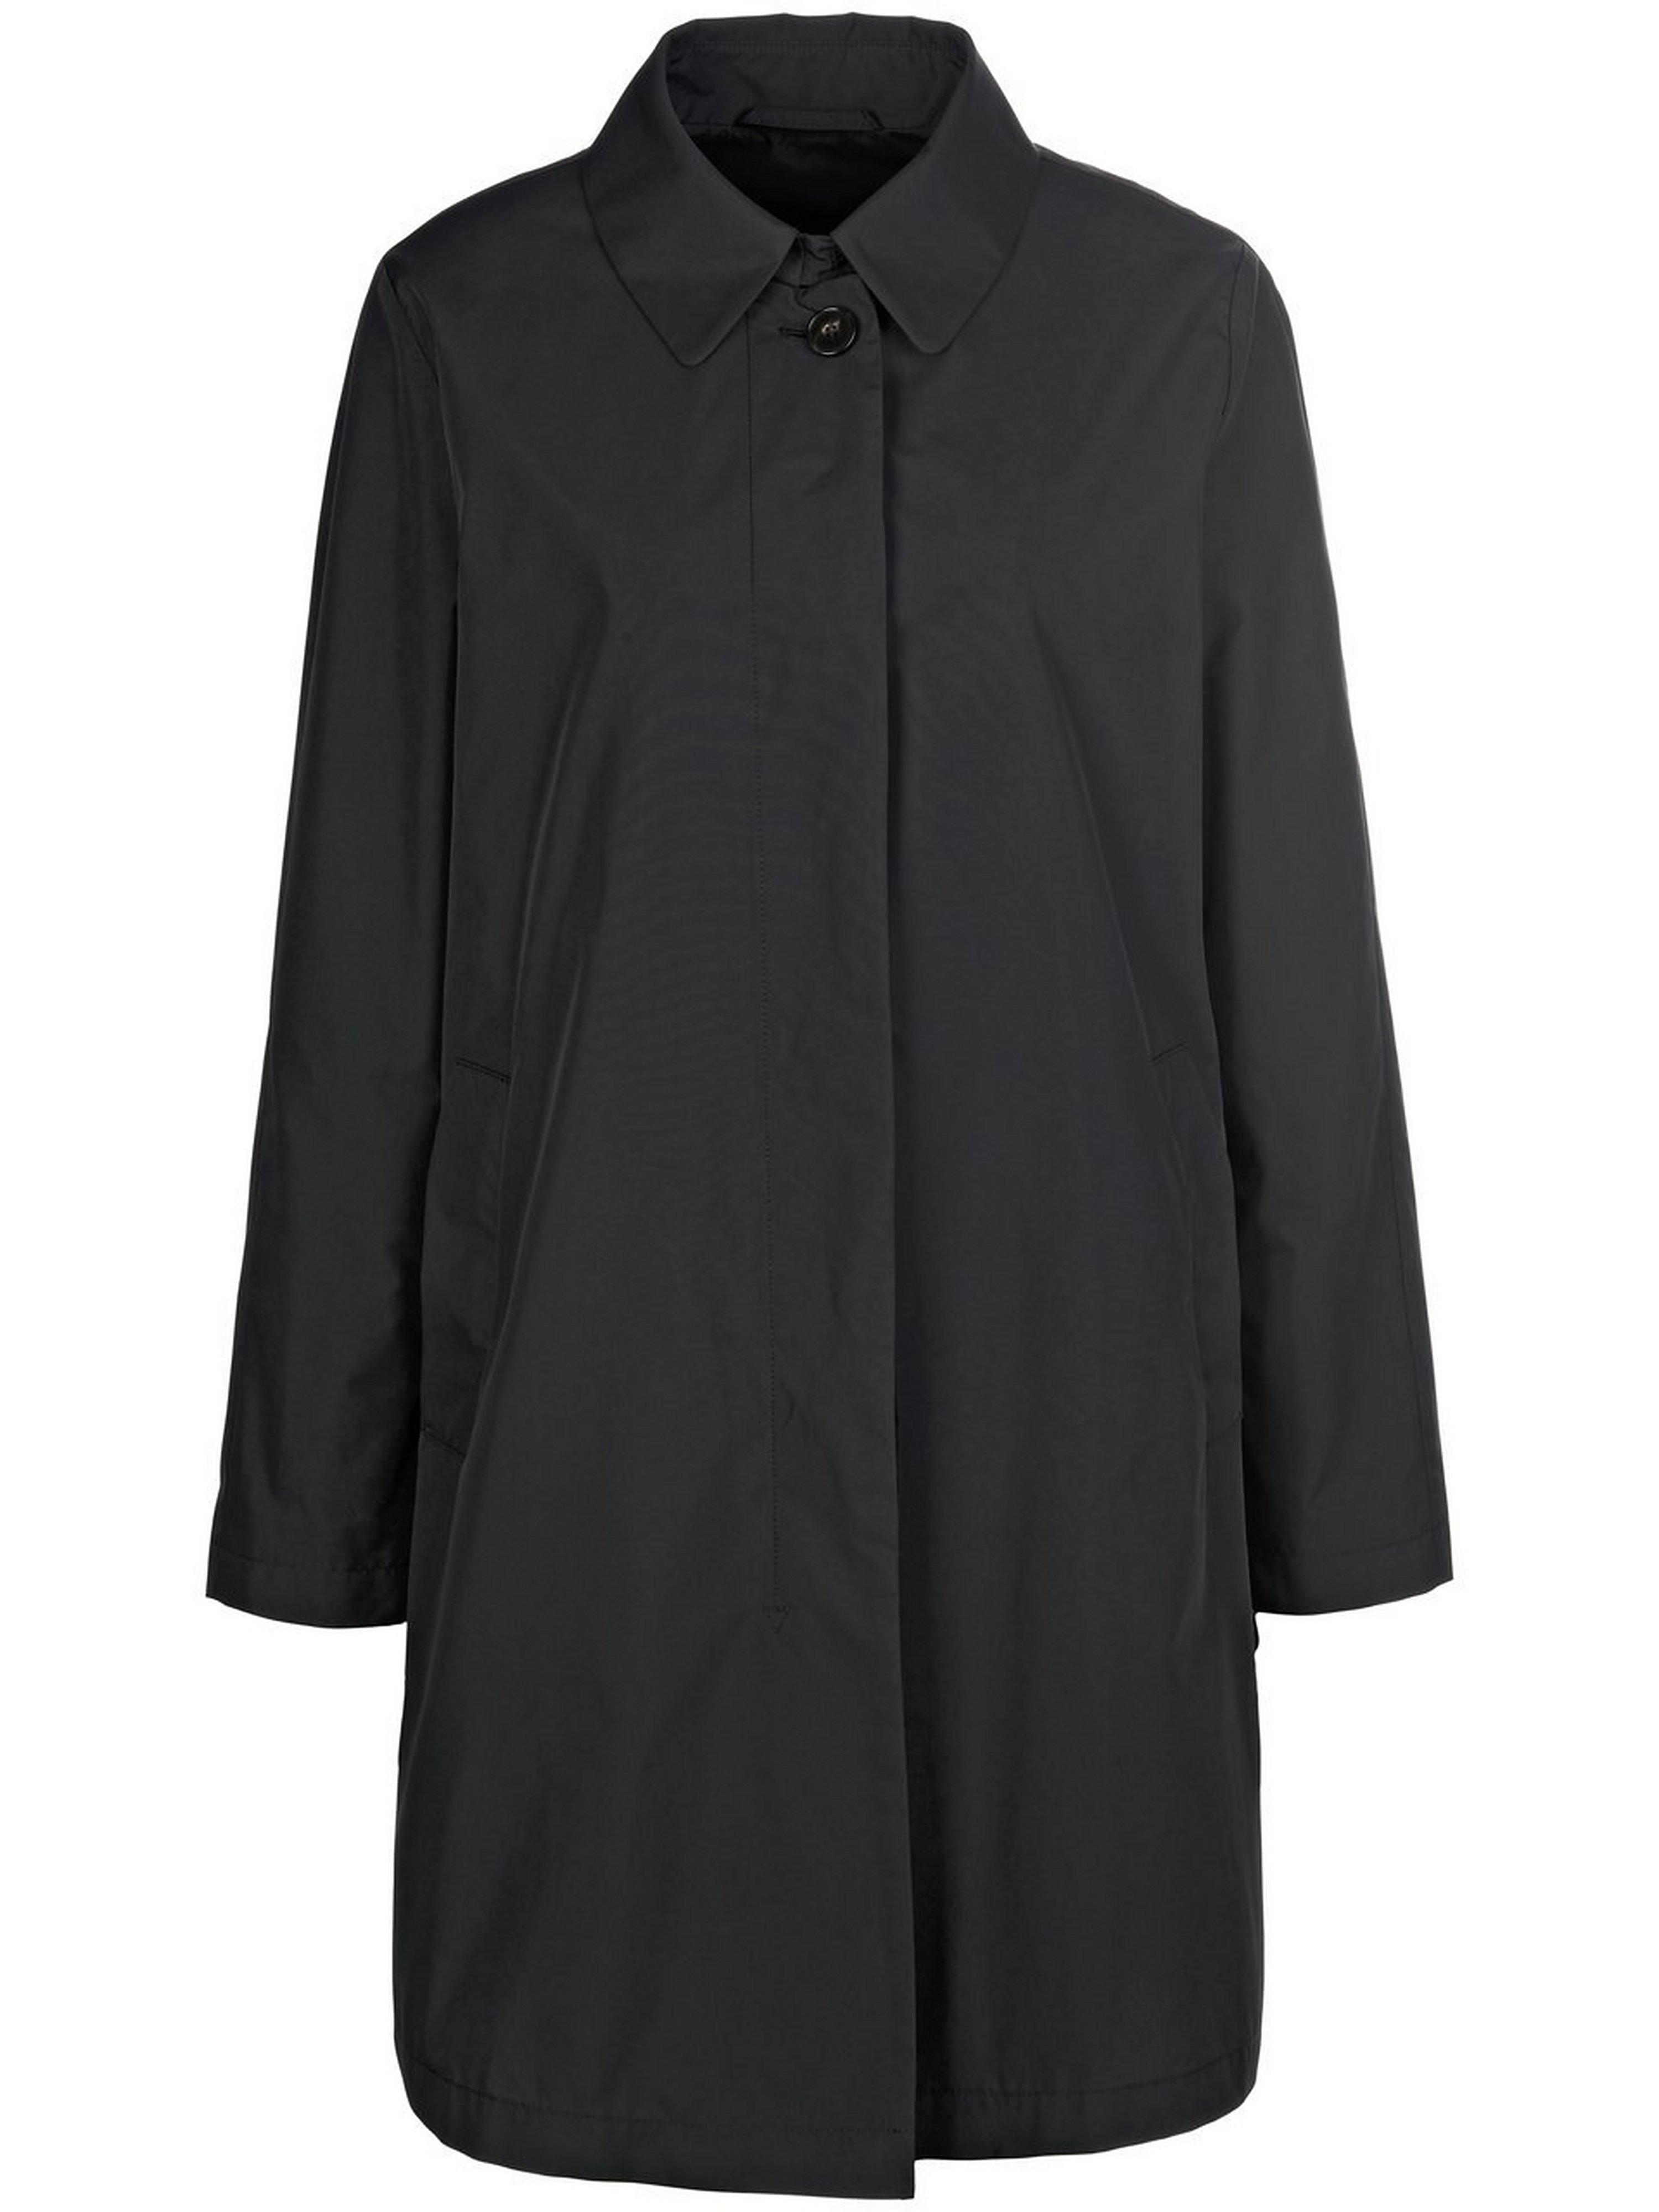 La veste longue à col chemise  Schneiders Salzburg noir taille 44